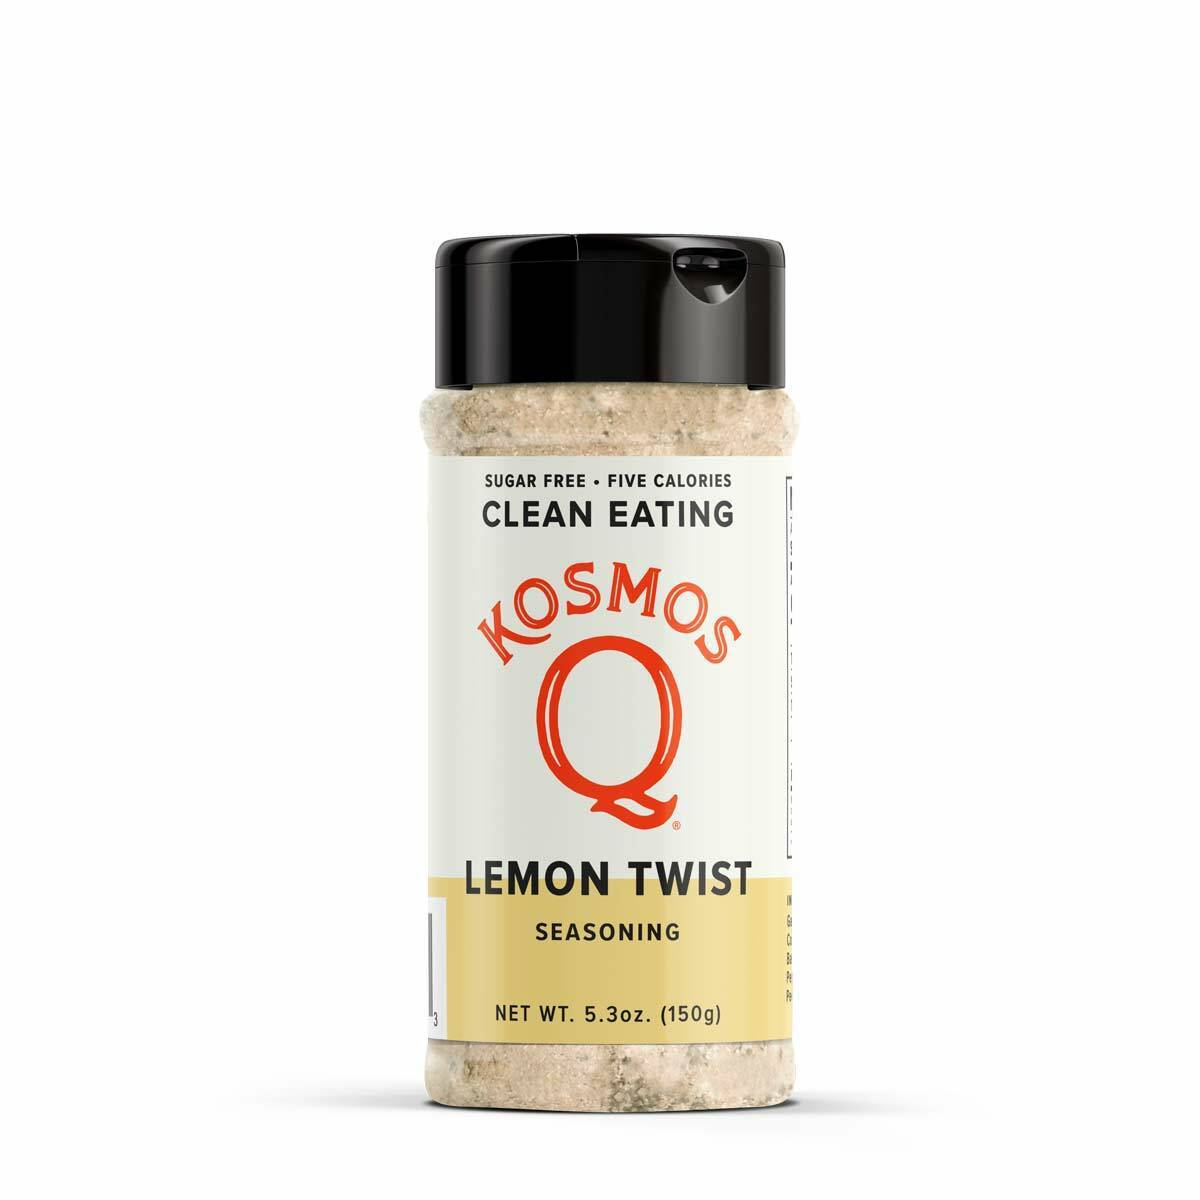 Kosmo's Q Clean Eating Seasonings Lemon Twist - Paleo & Keto Clean Eating Seasoning